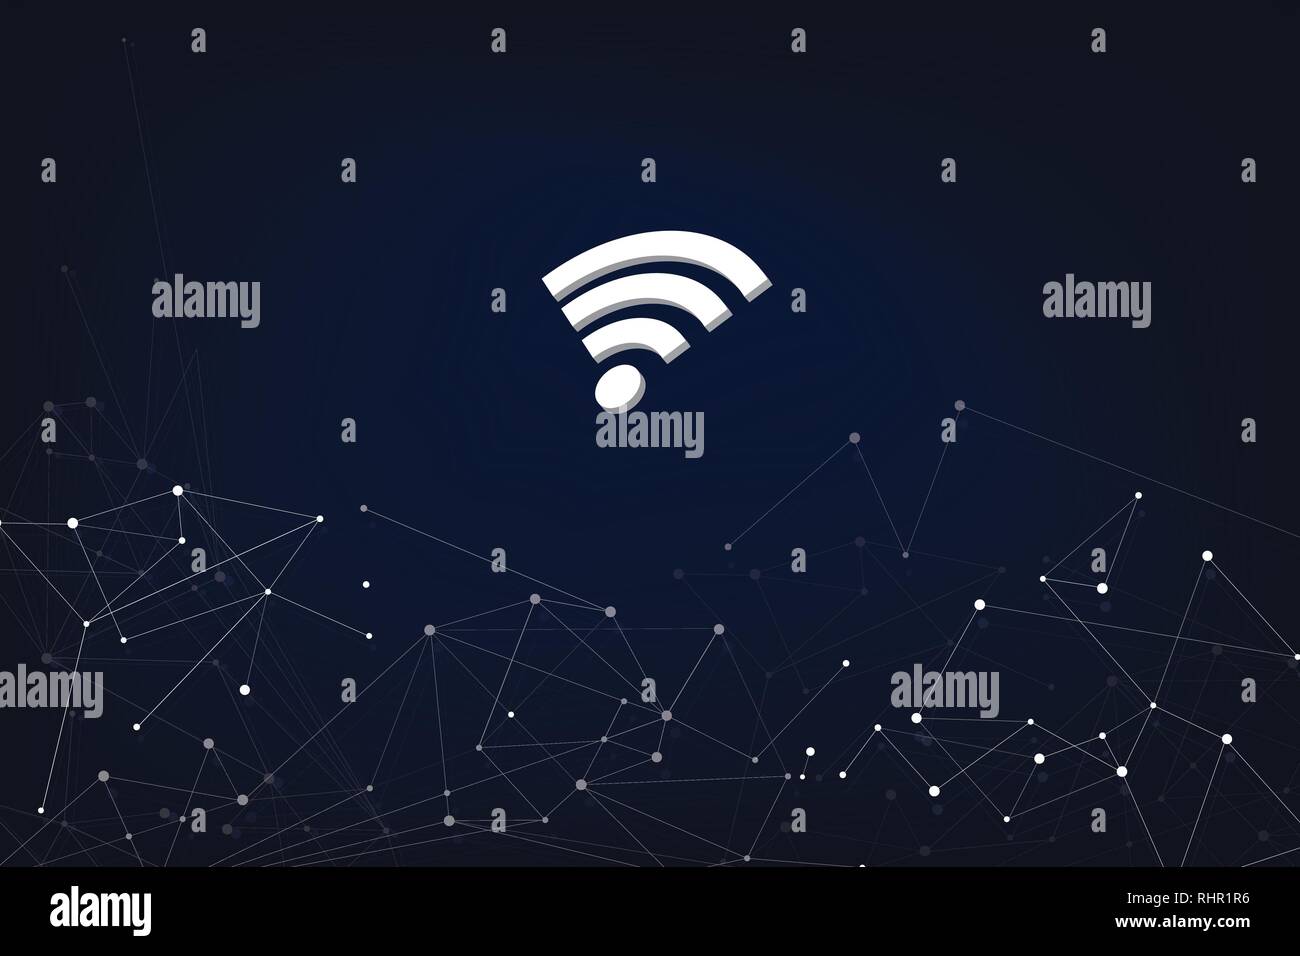 Abstrakte Digitale Netzwerk Konzept mit Wlan Symbol mit Abstrakten dunklen Hintergrund Stock Vektor